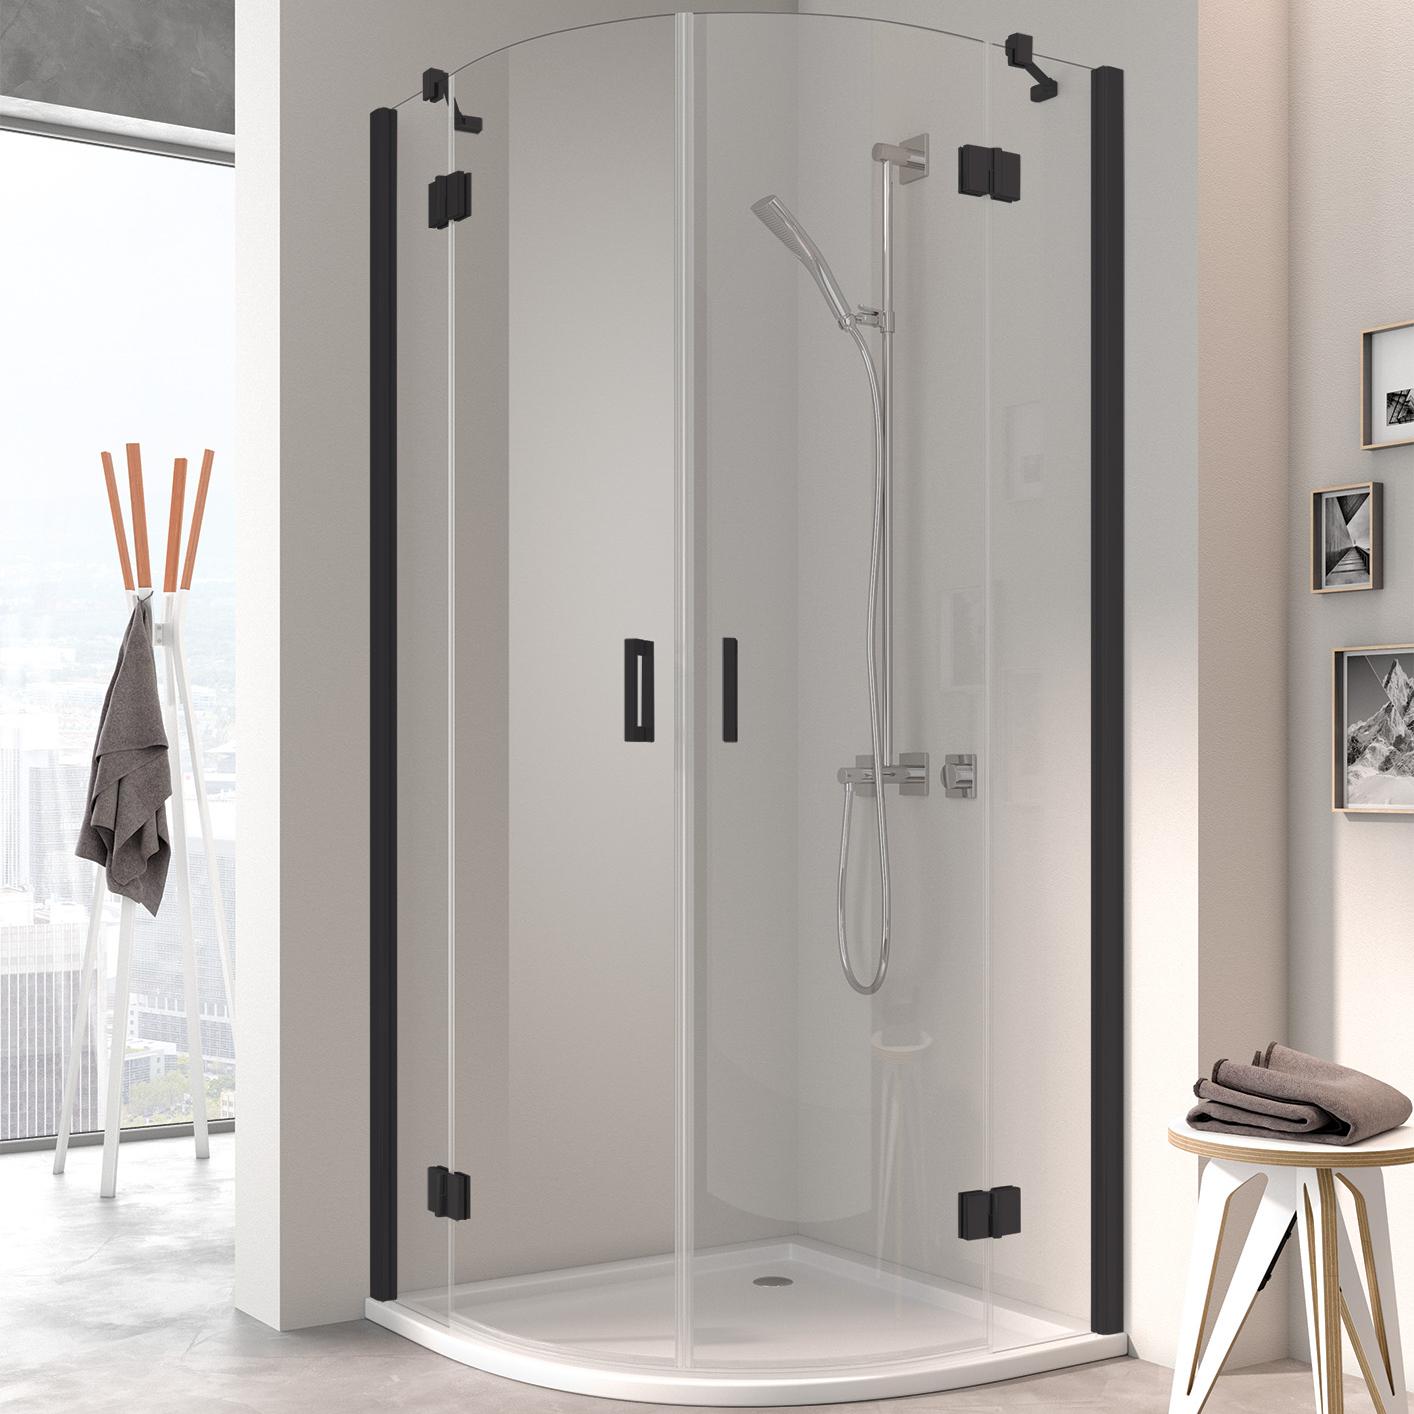 Pantový sprchový kout Kermi OSIA Čtvrtkruhový sprchový kout (otočné dveře s pevnými poli), černá